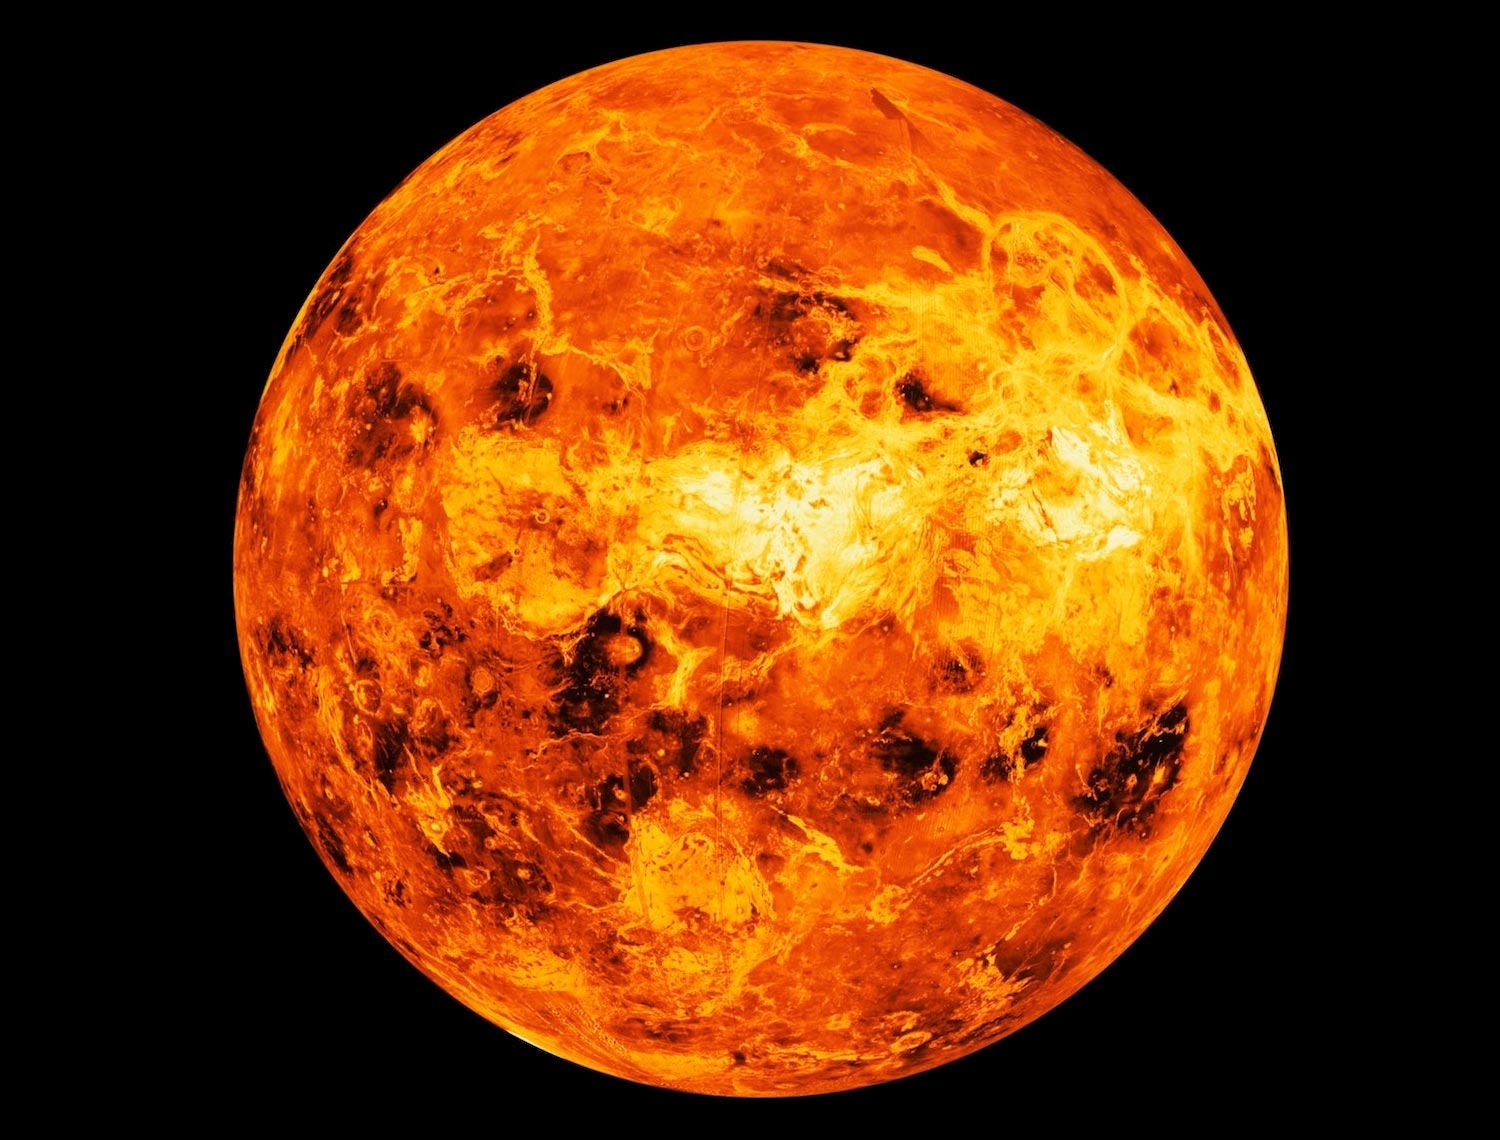 行星研究人员惊讶地发现金星上有一个“火环” - yabo208